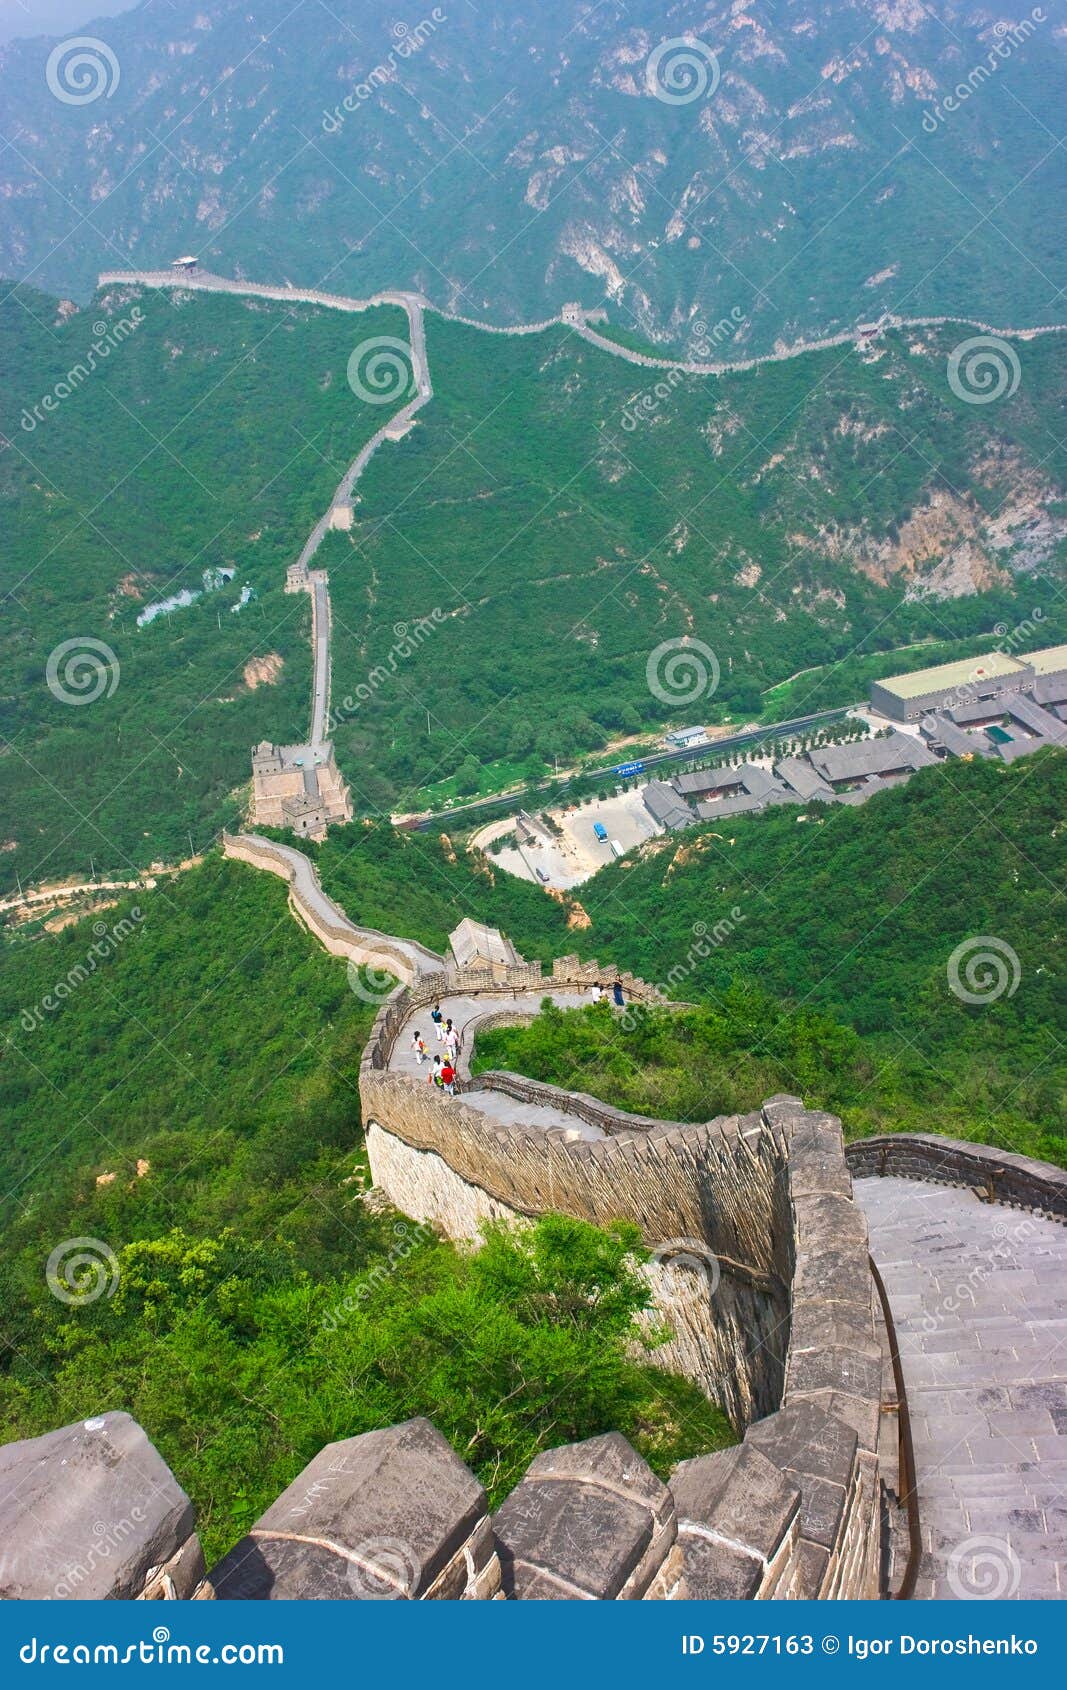 Wielki krok do ściany. Pekin beijing zdjęciu lata segmentu chiny chineese wielka do ściany